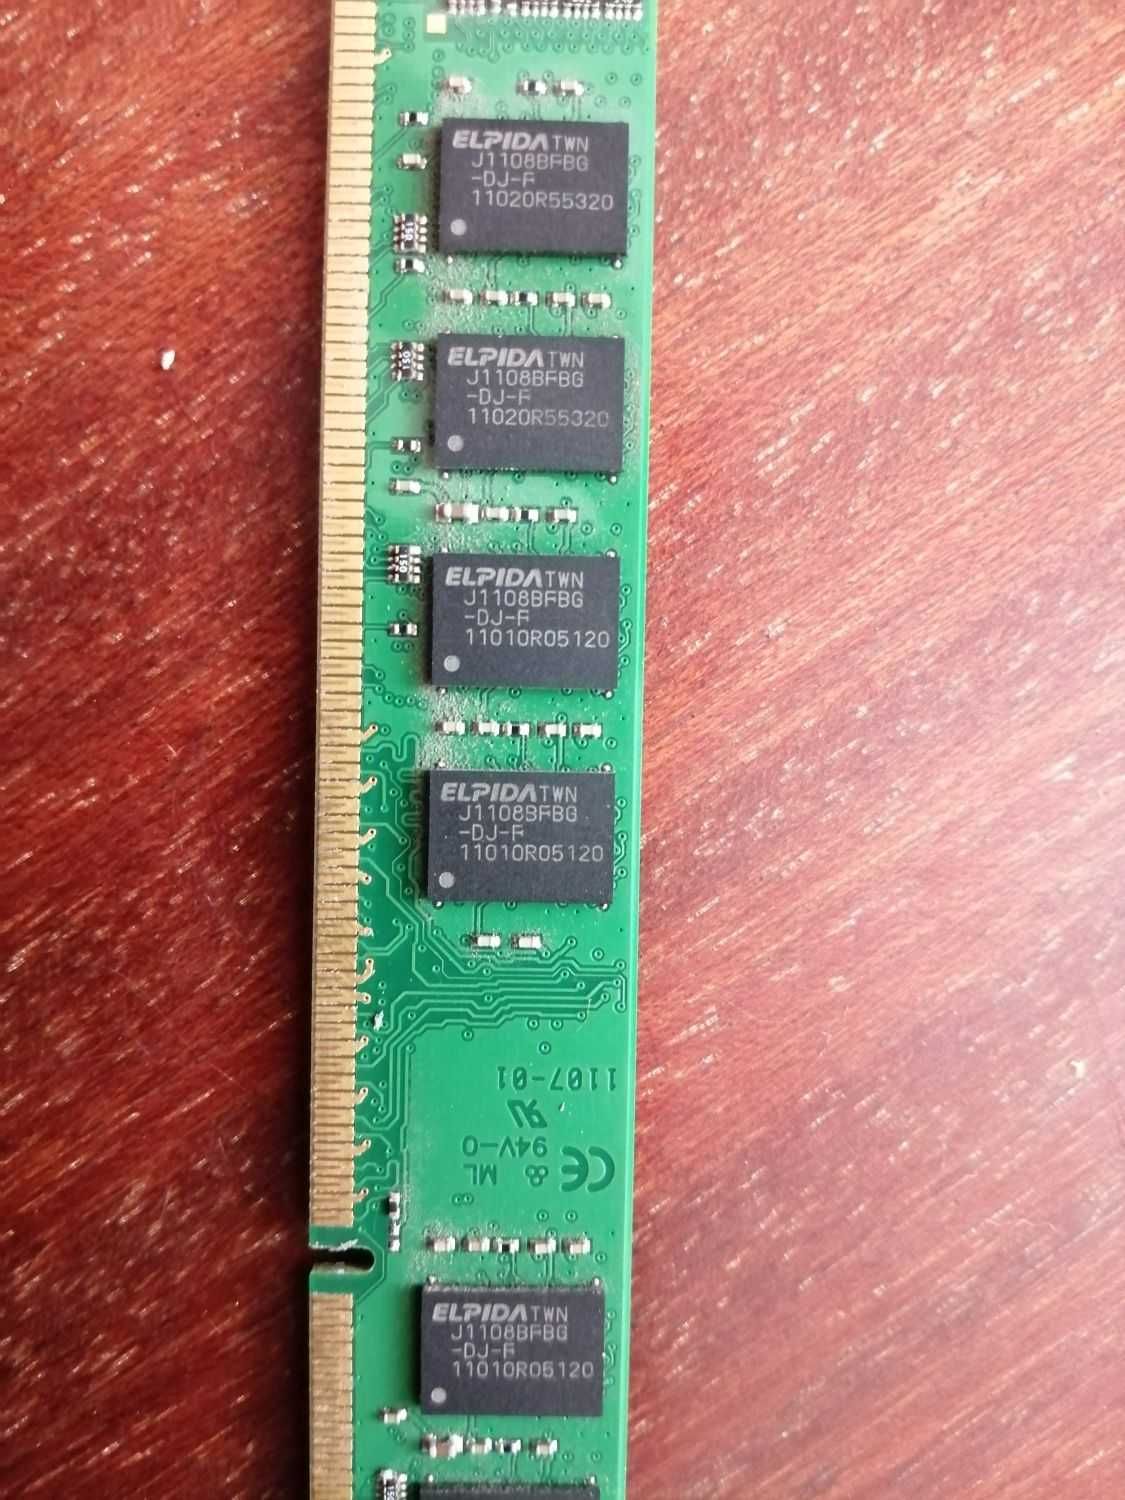 ОЗУ оперативная память Kingston DDR3 1333MHz 2Gb RAM KVR1333D3N9